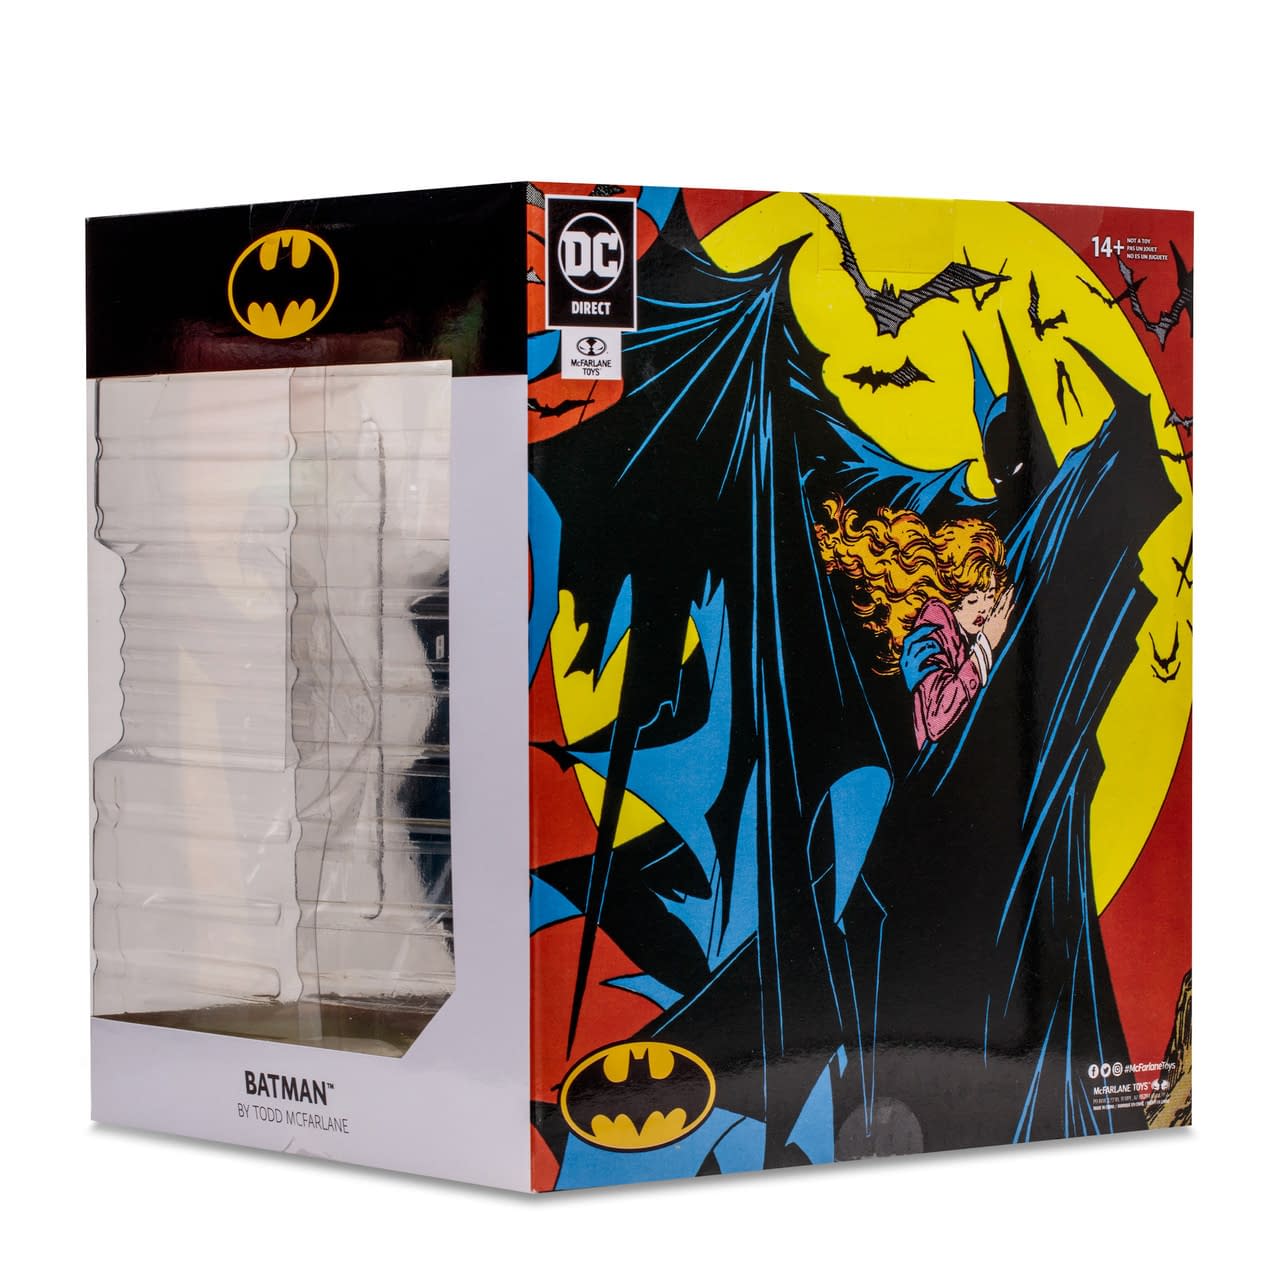 McFarlane Toys Unveils New Batman #423 Statue with Autograph Option